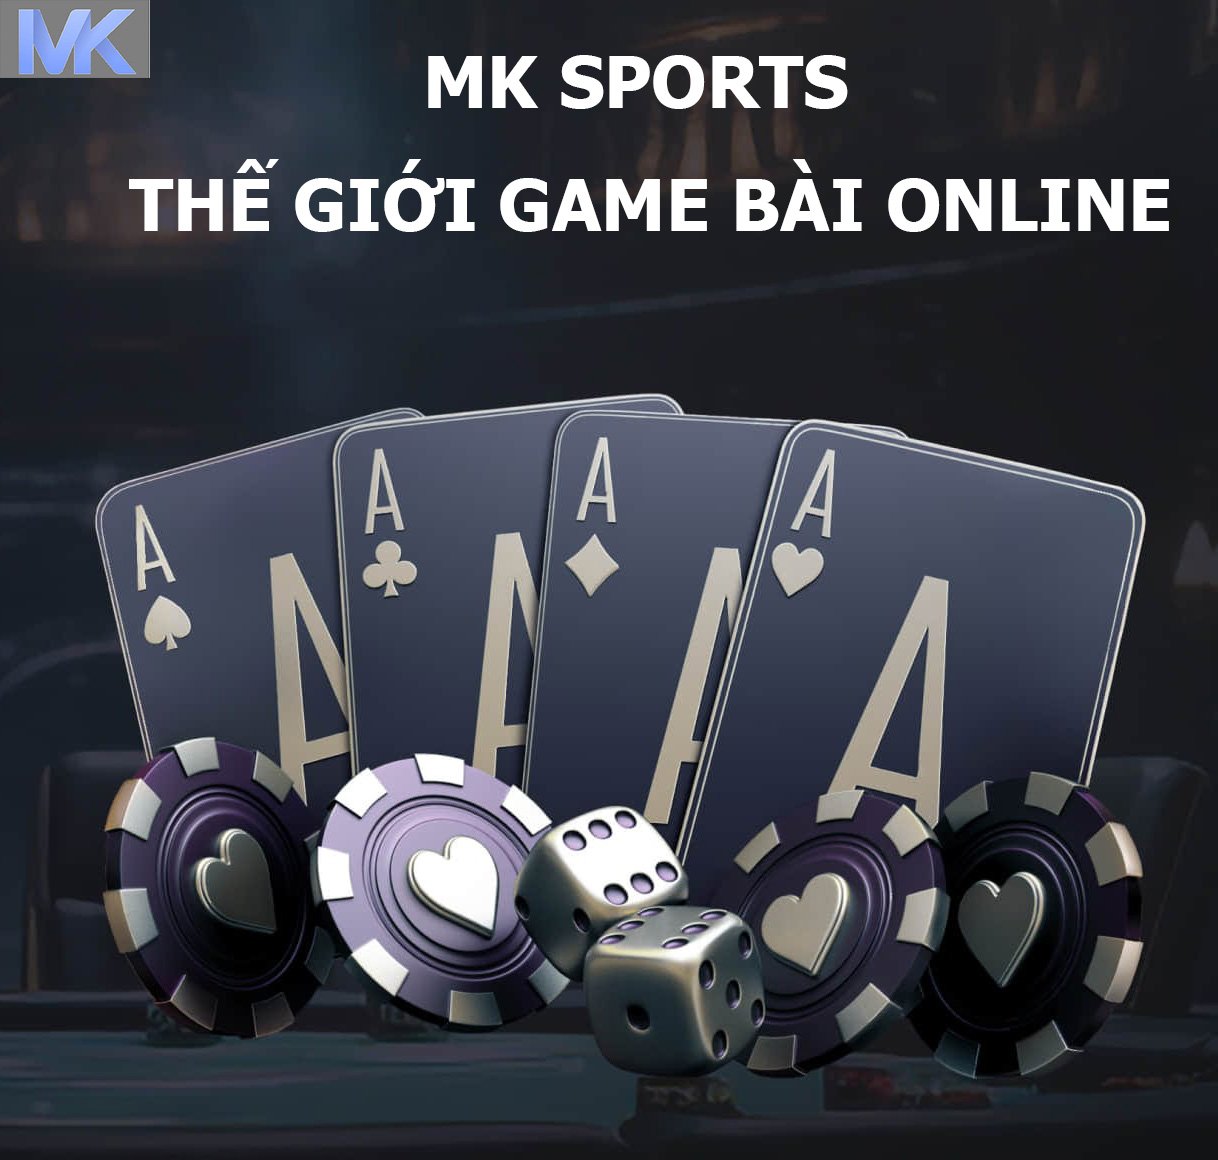 GAME BAI MK SPORTS